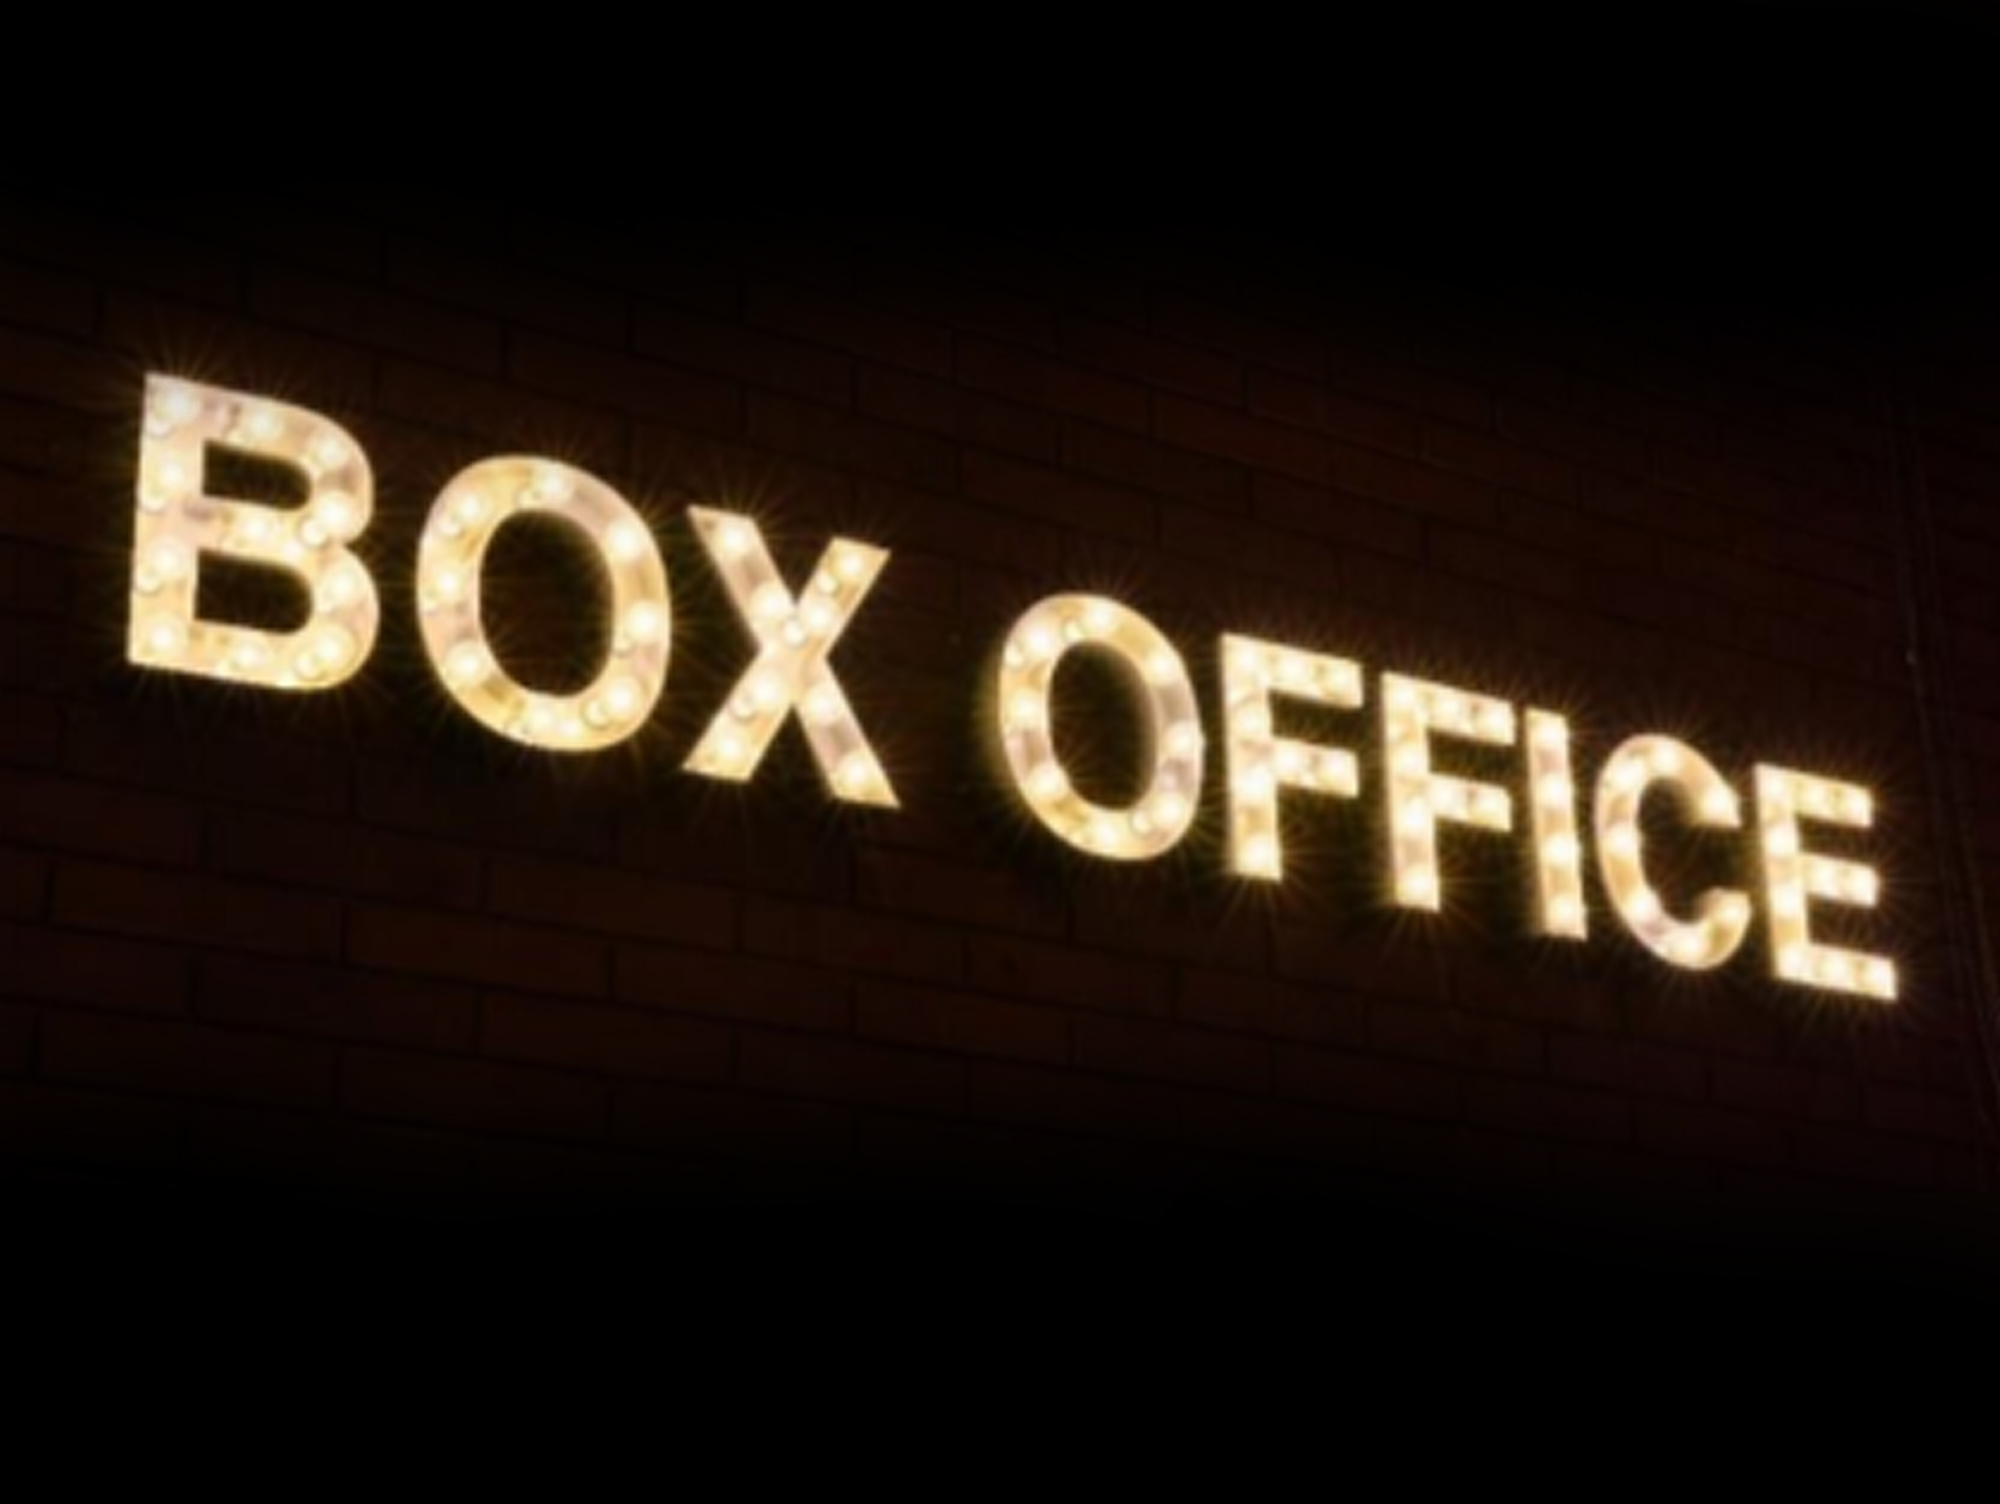 Box Office illuminated sign